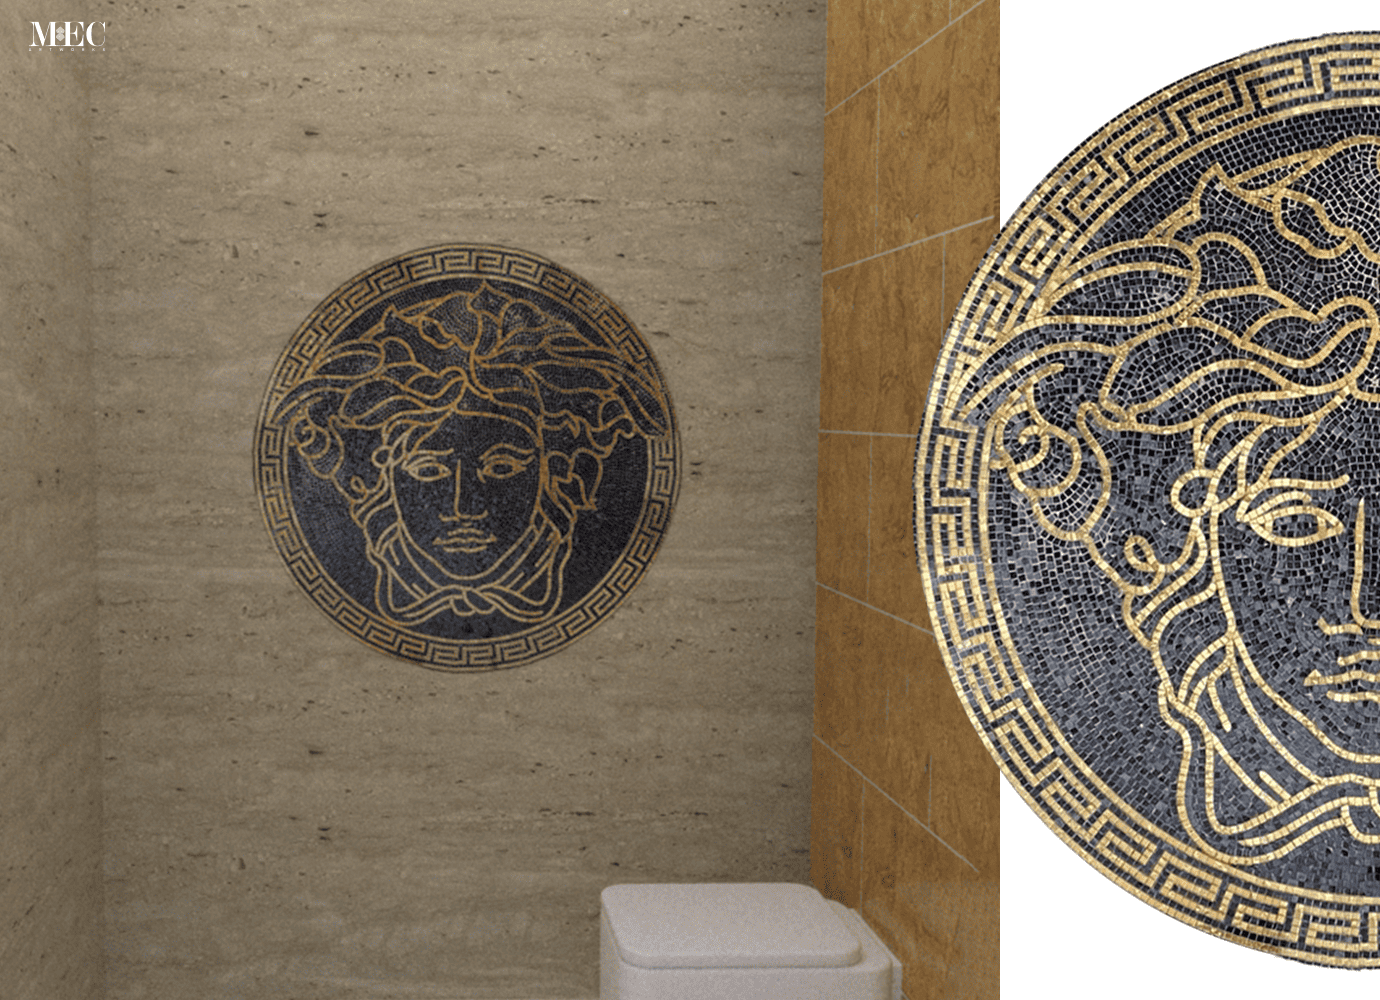 Medusa mosaic artwork on bathroom wall.